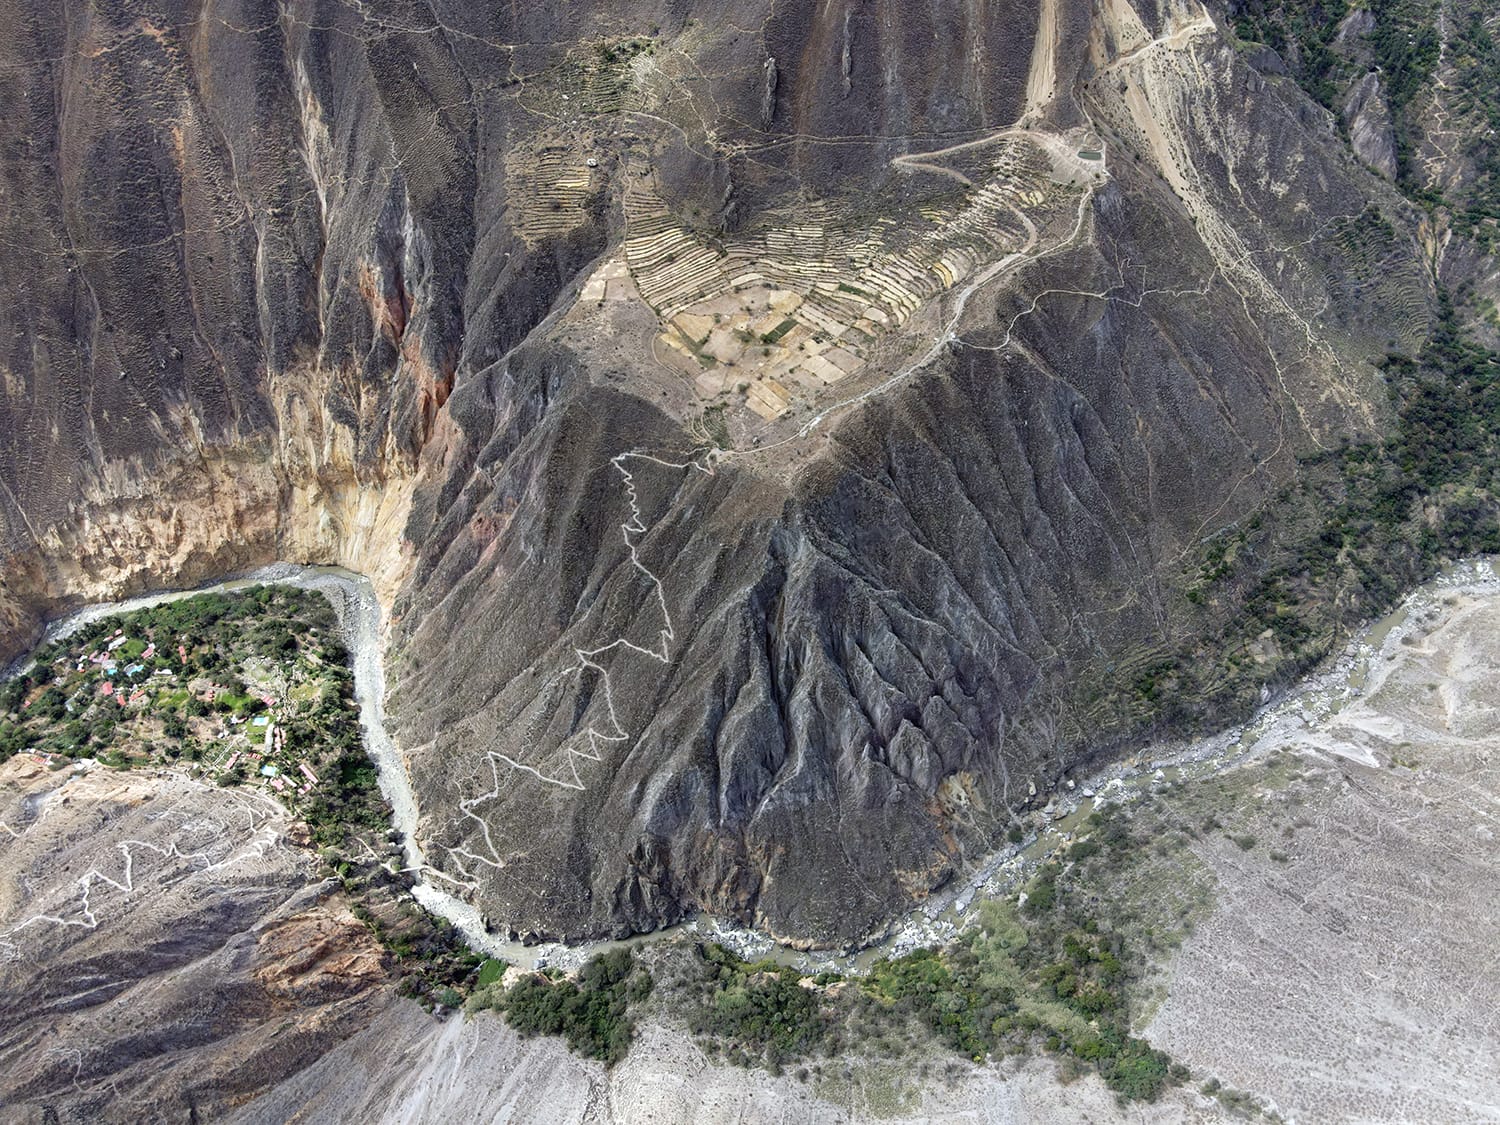 Trek de Cabanaconde : 3 jours de trek dans le Canyon de Colca